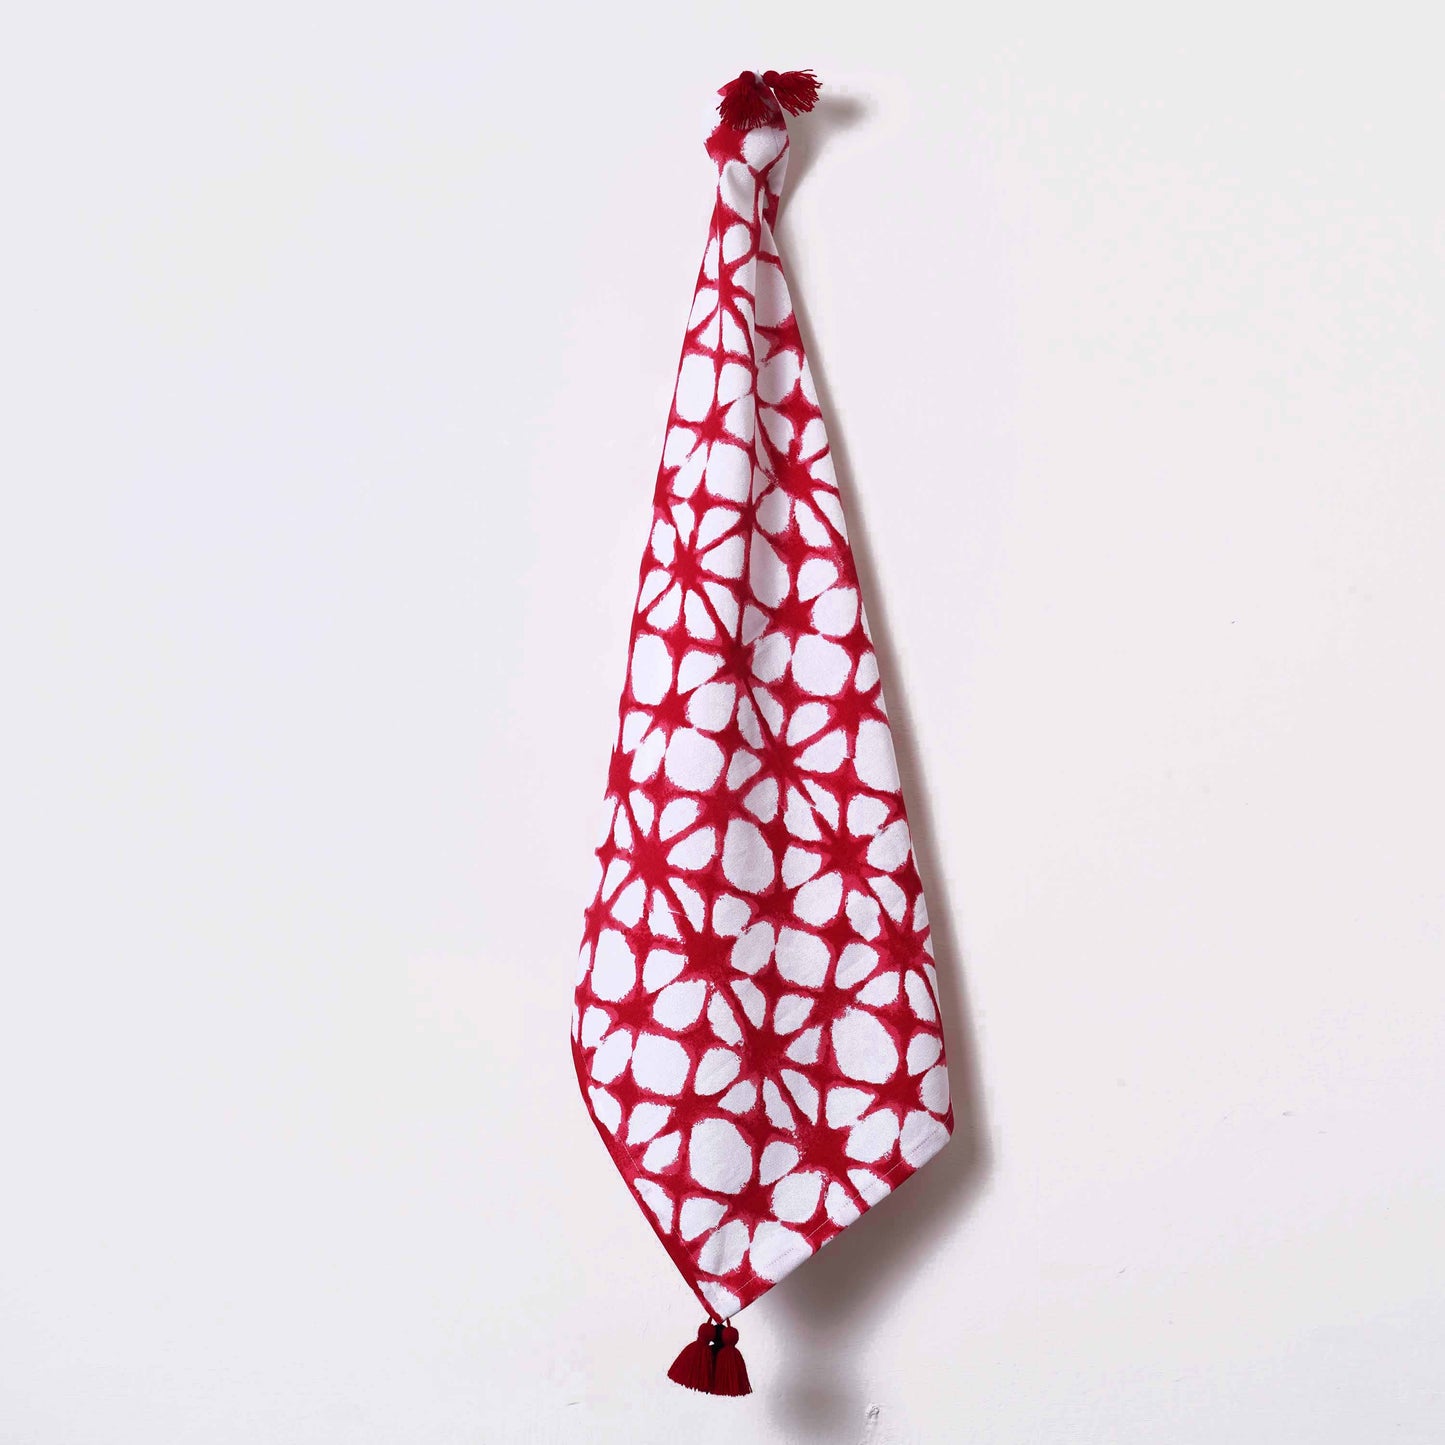 PRISM cotton Table napkin, Red tie dye print on white